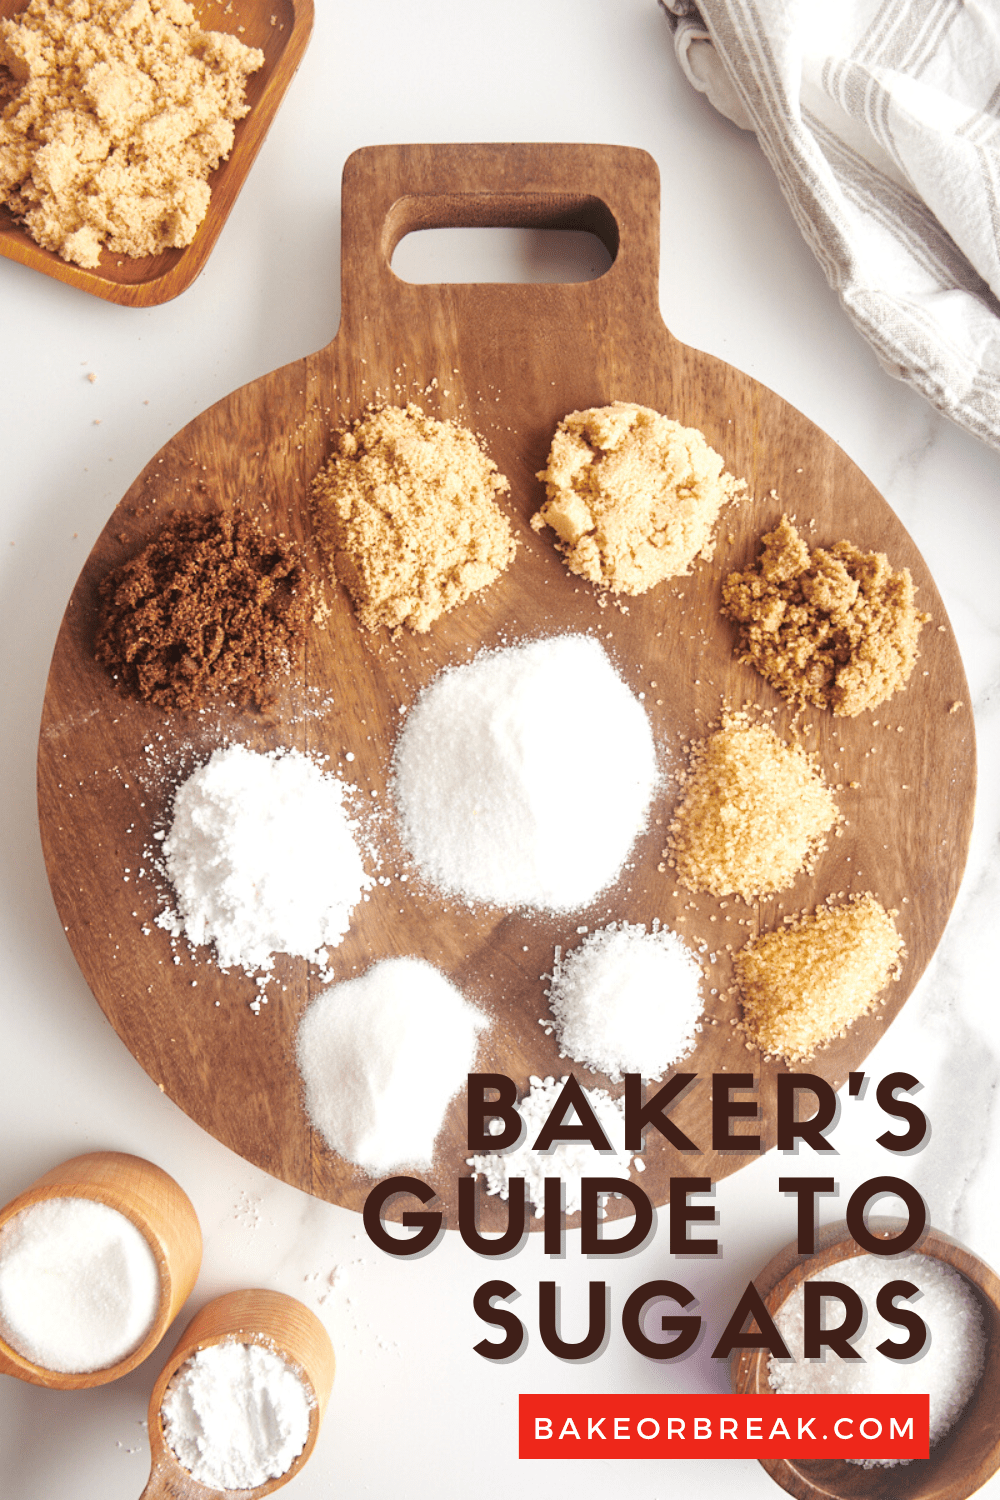 Baker's Guide to Sugars bakeorbreak.com